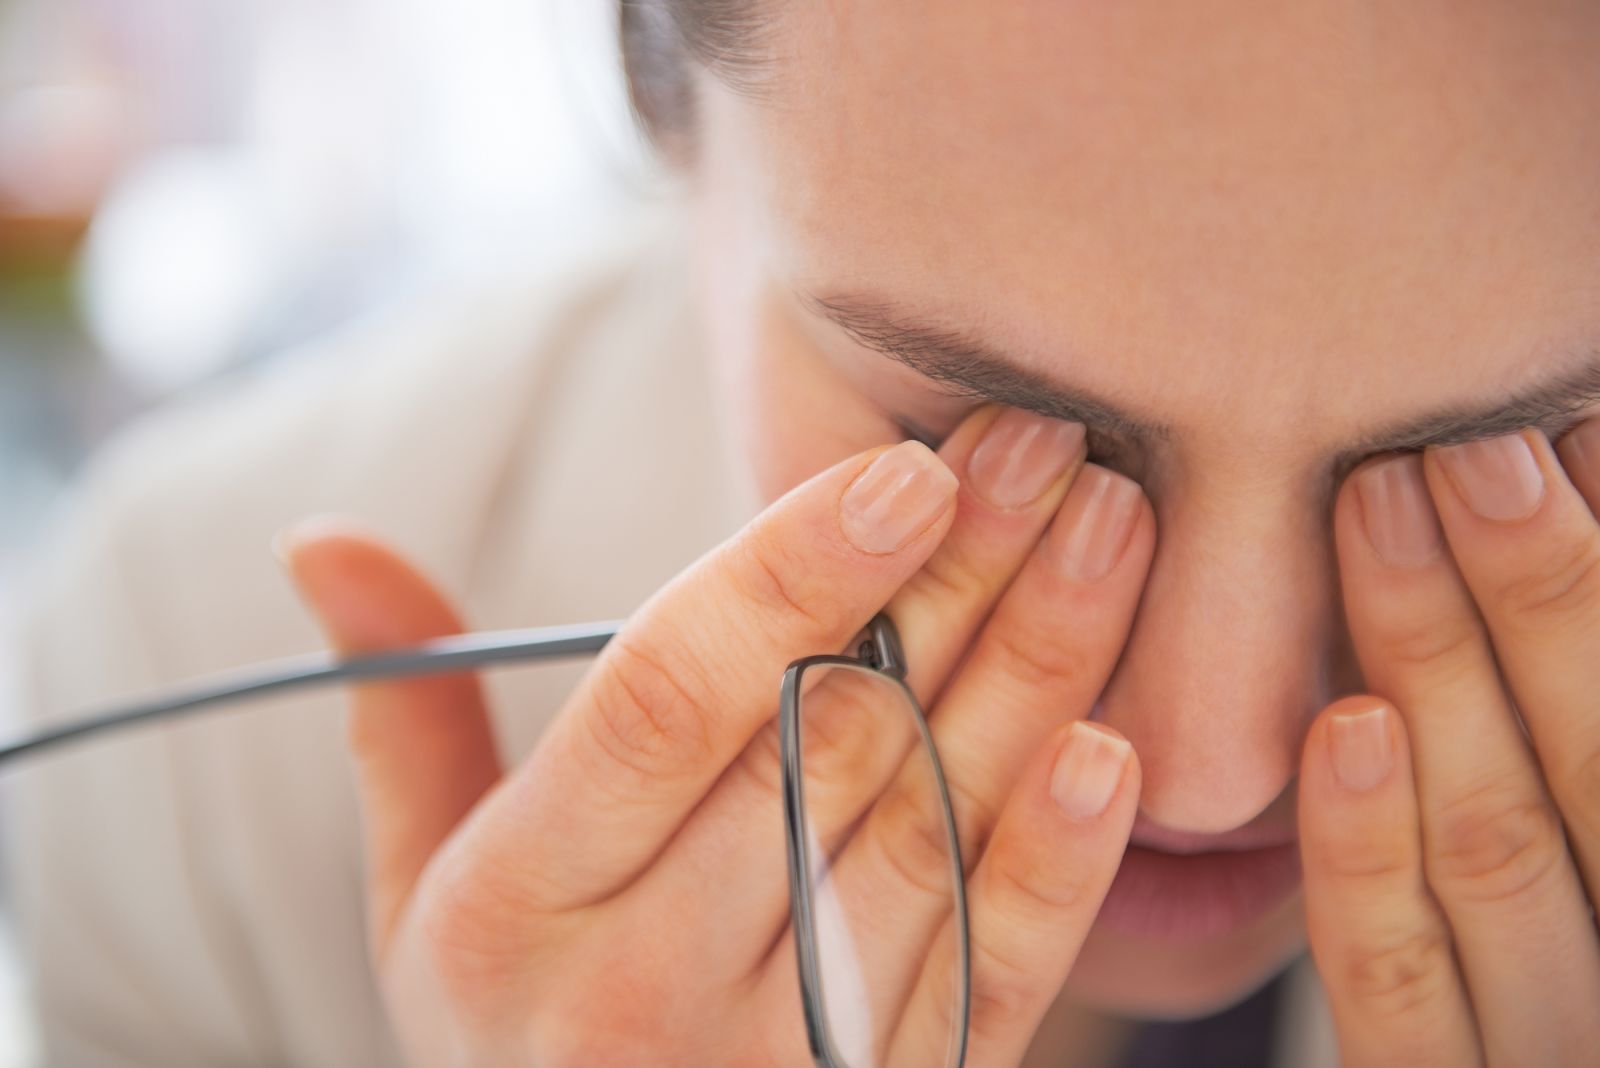 خشکی چشم یکی از رایج ترین عارضه های چشمی | پذیرش24 نوبت دهی پزشک،بیمارستان  و مطب دکتر